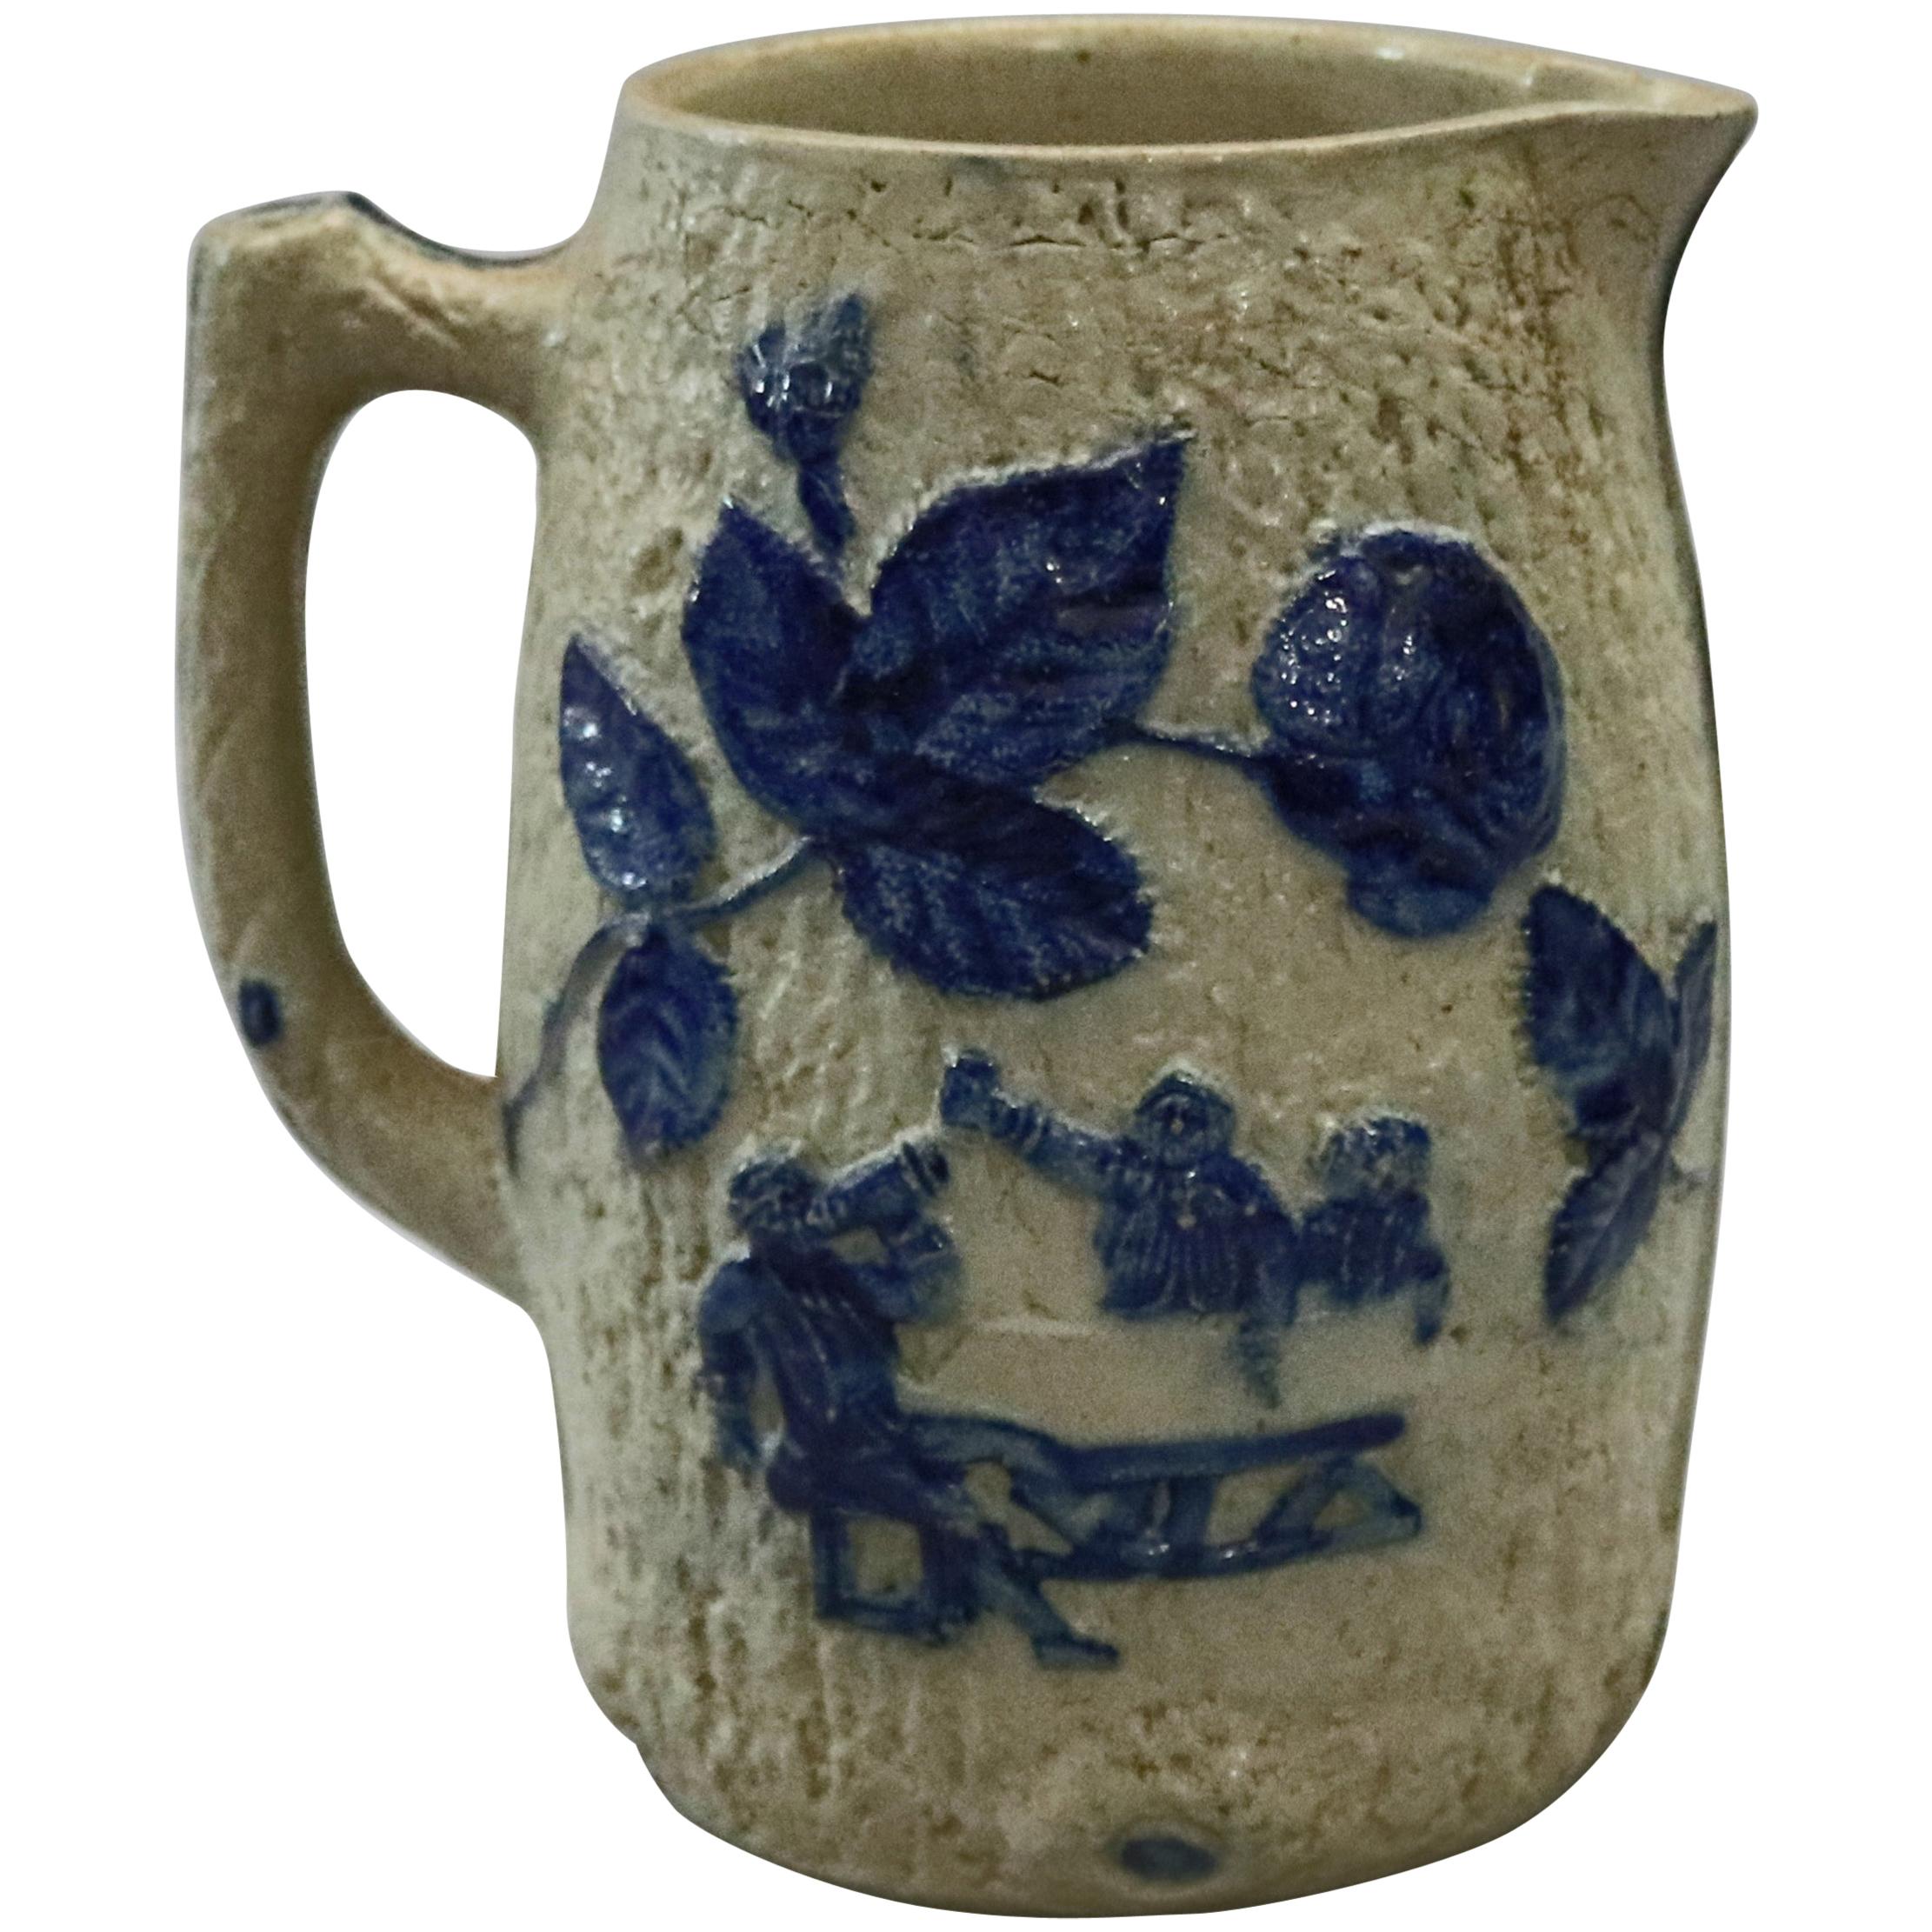 Utica White's Pottery, NY Blue Decorated Stoneware Jug, Pub Scene, circa 1880